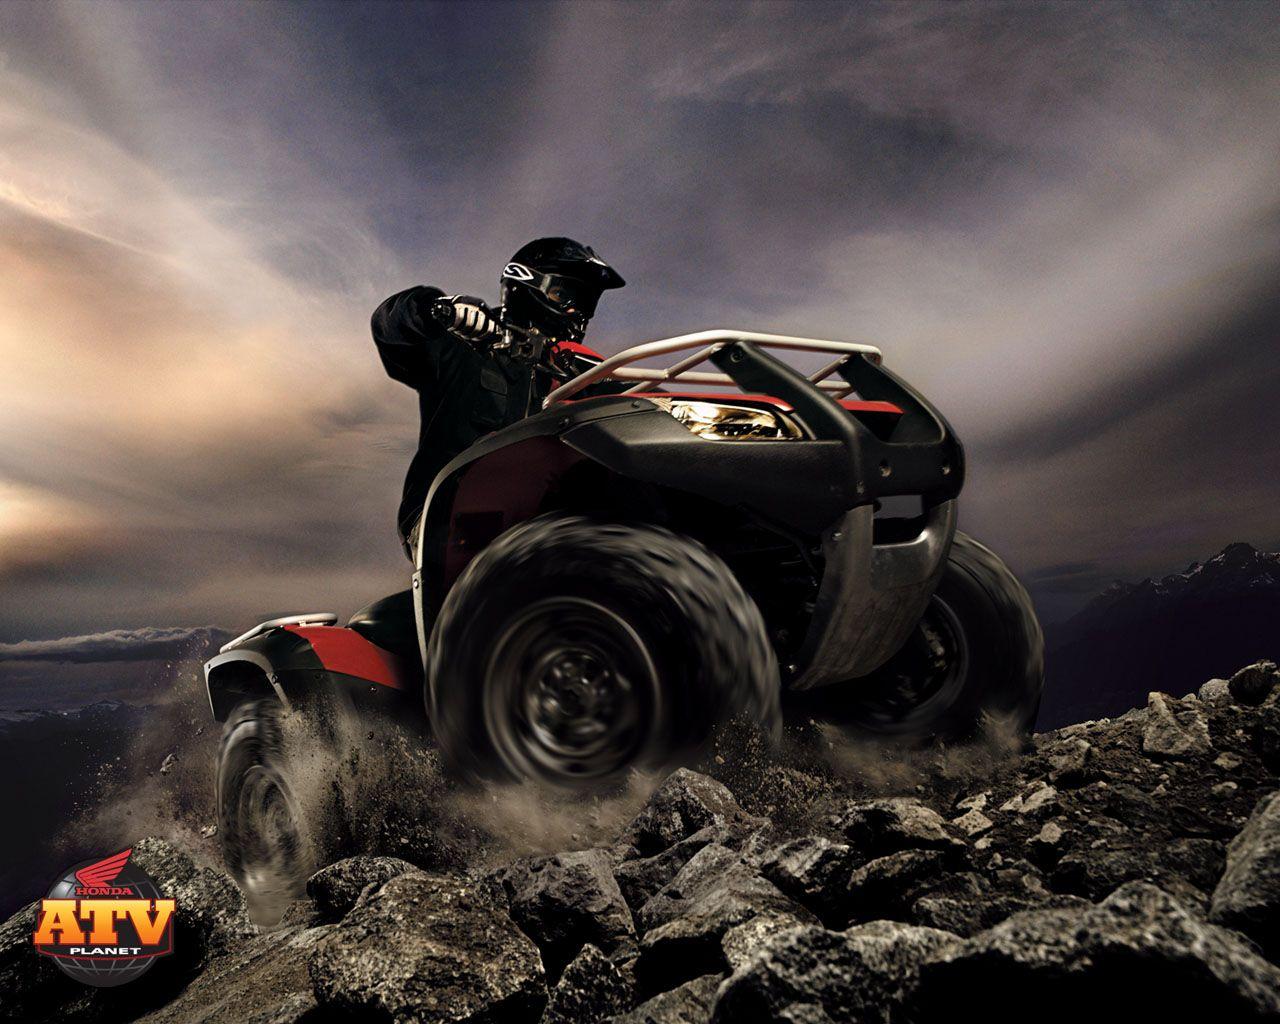 SRY Honda ATV Wallpapers, Honda ATV Backgrounds In Best